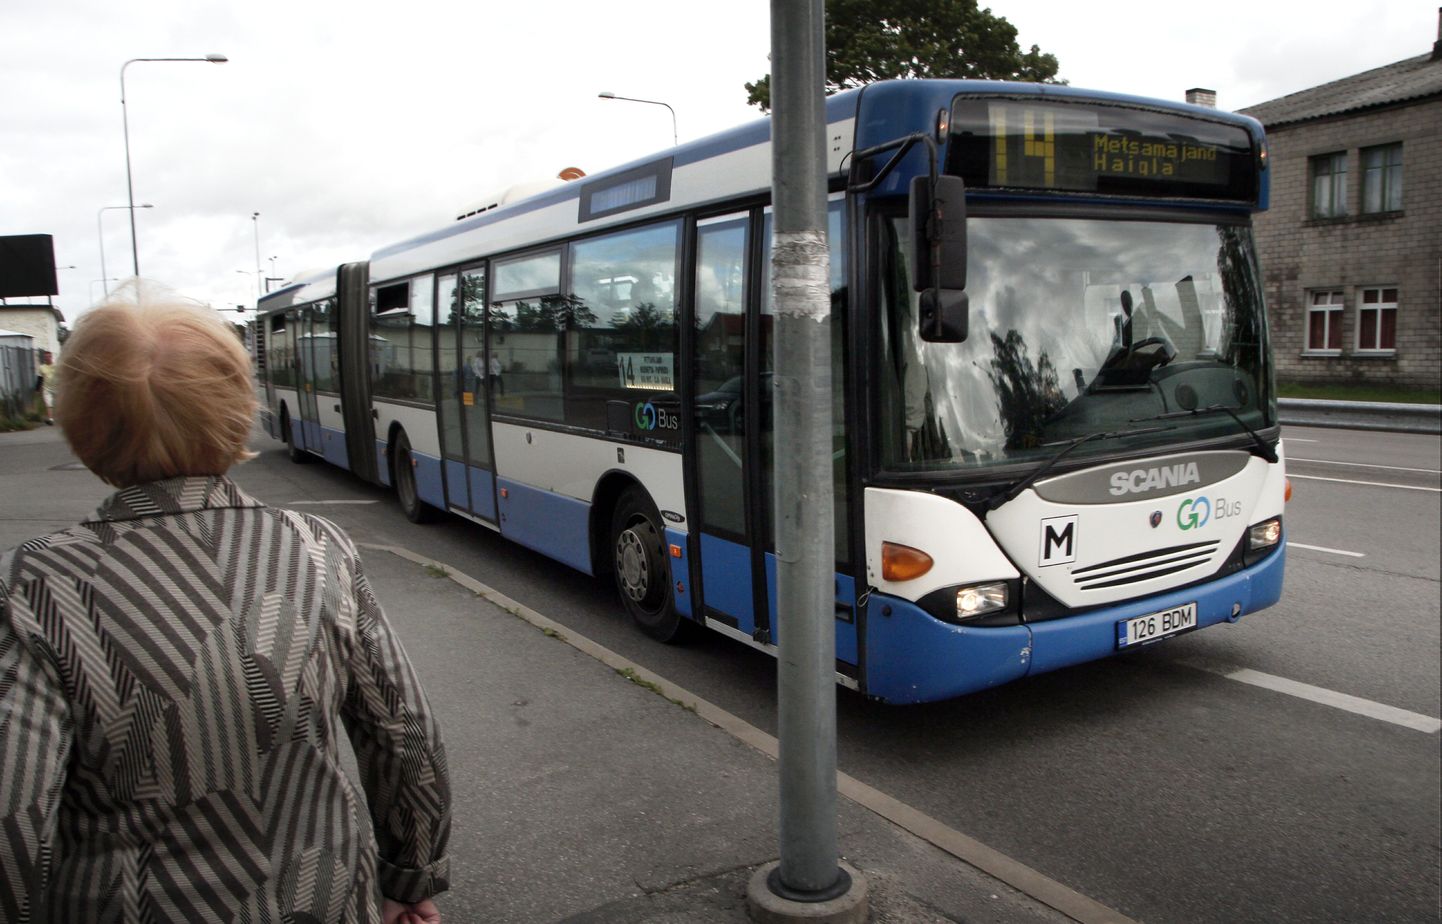 Madalapõhjalise linnaliinibussi tunneb ära sõidukile märgitud M-tähest.